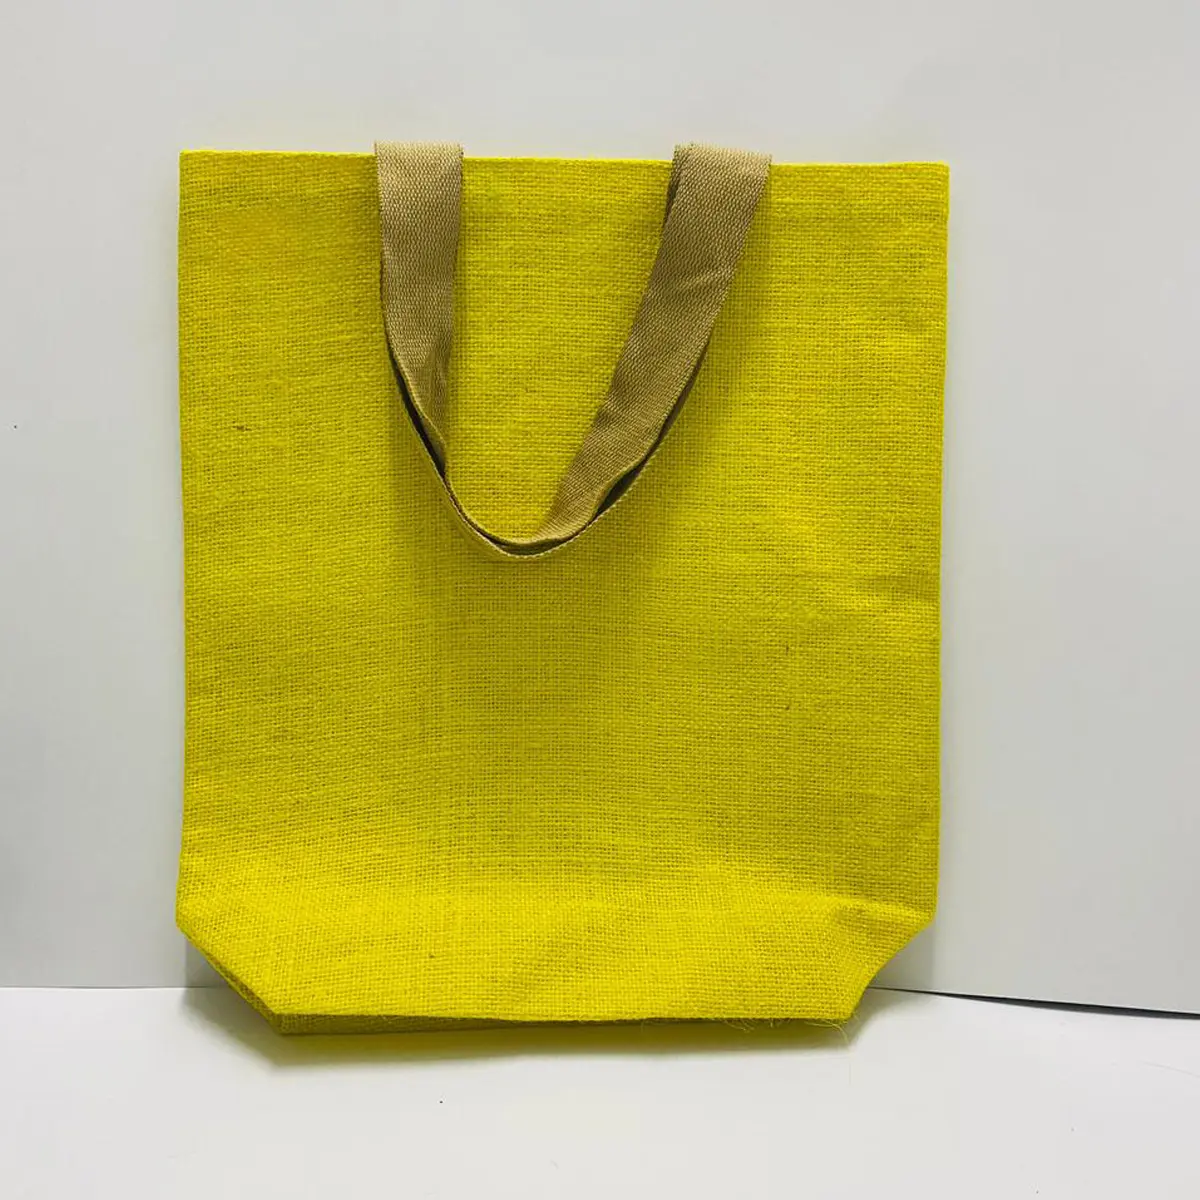 Eko çanta için kullanılan promosyon jüt mikrofiber kullanımlık alışveriş olmayan dokuma bakkal çantaları toptan düz Shopper çanta özel baskılı